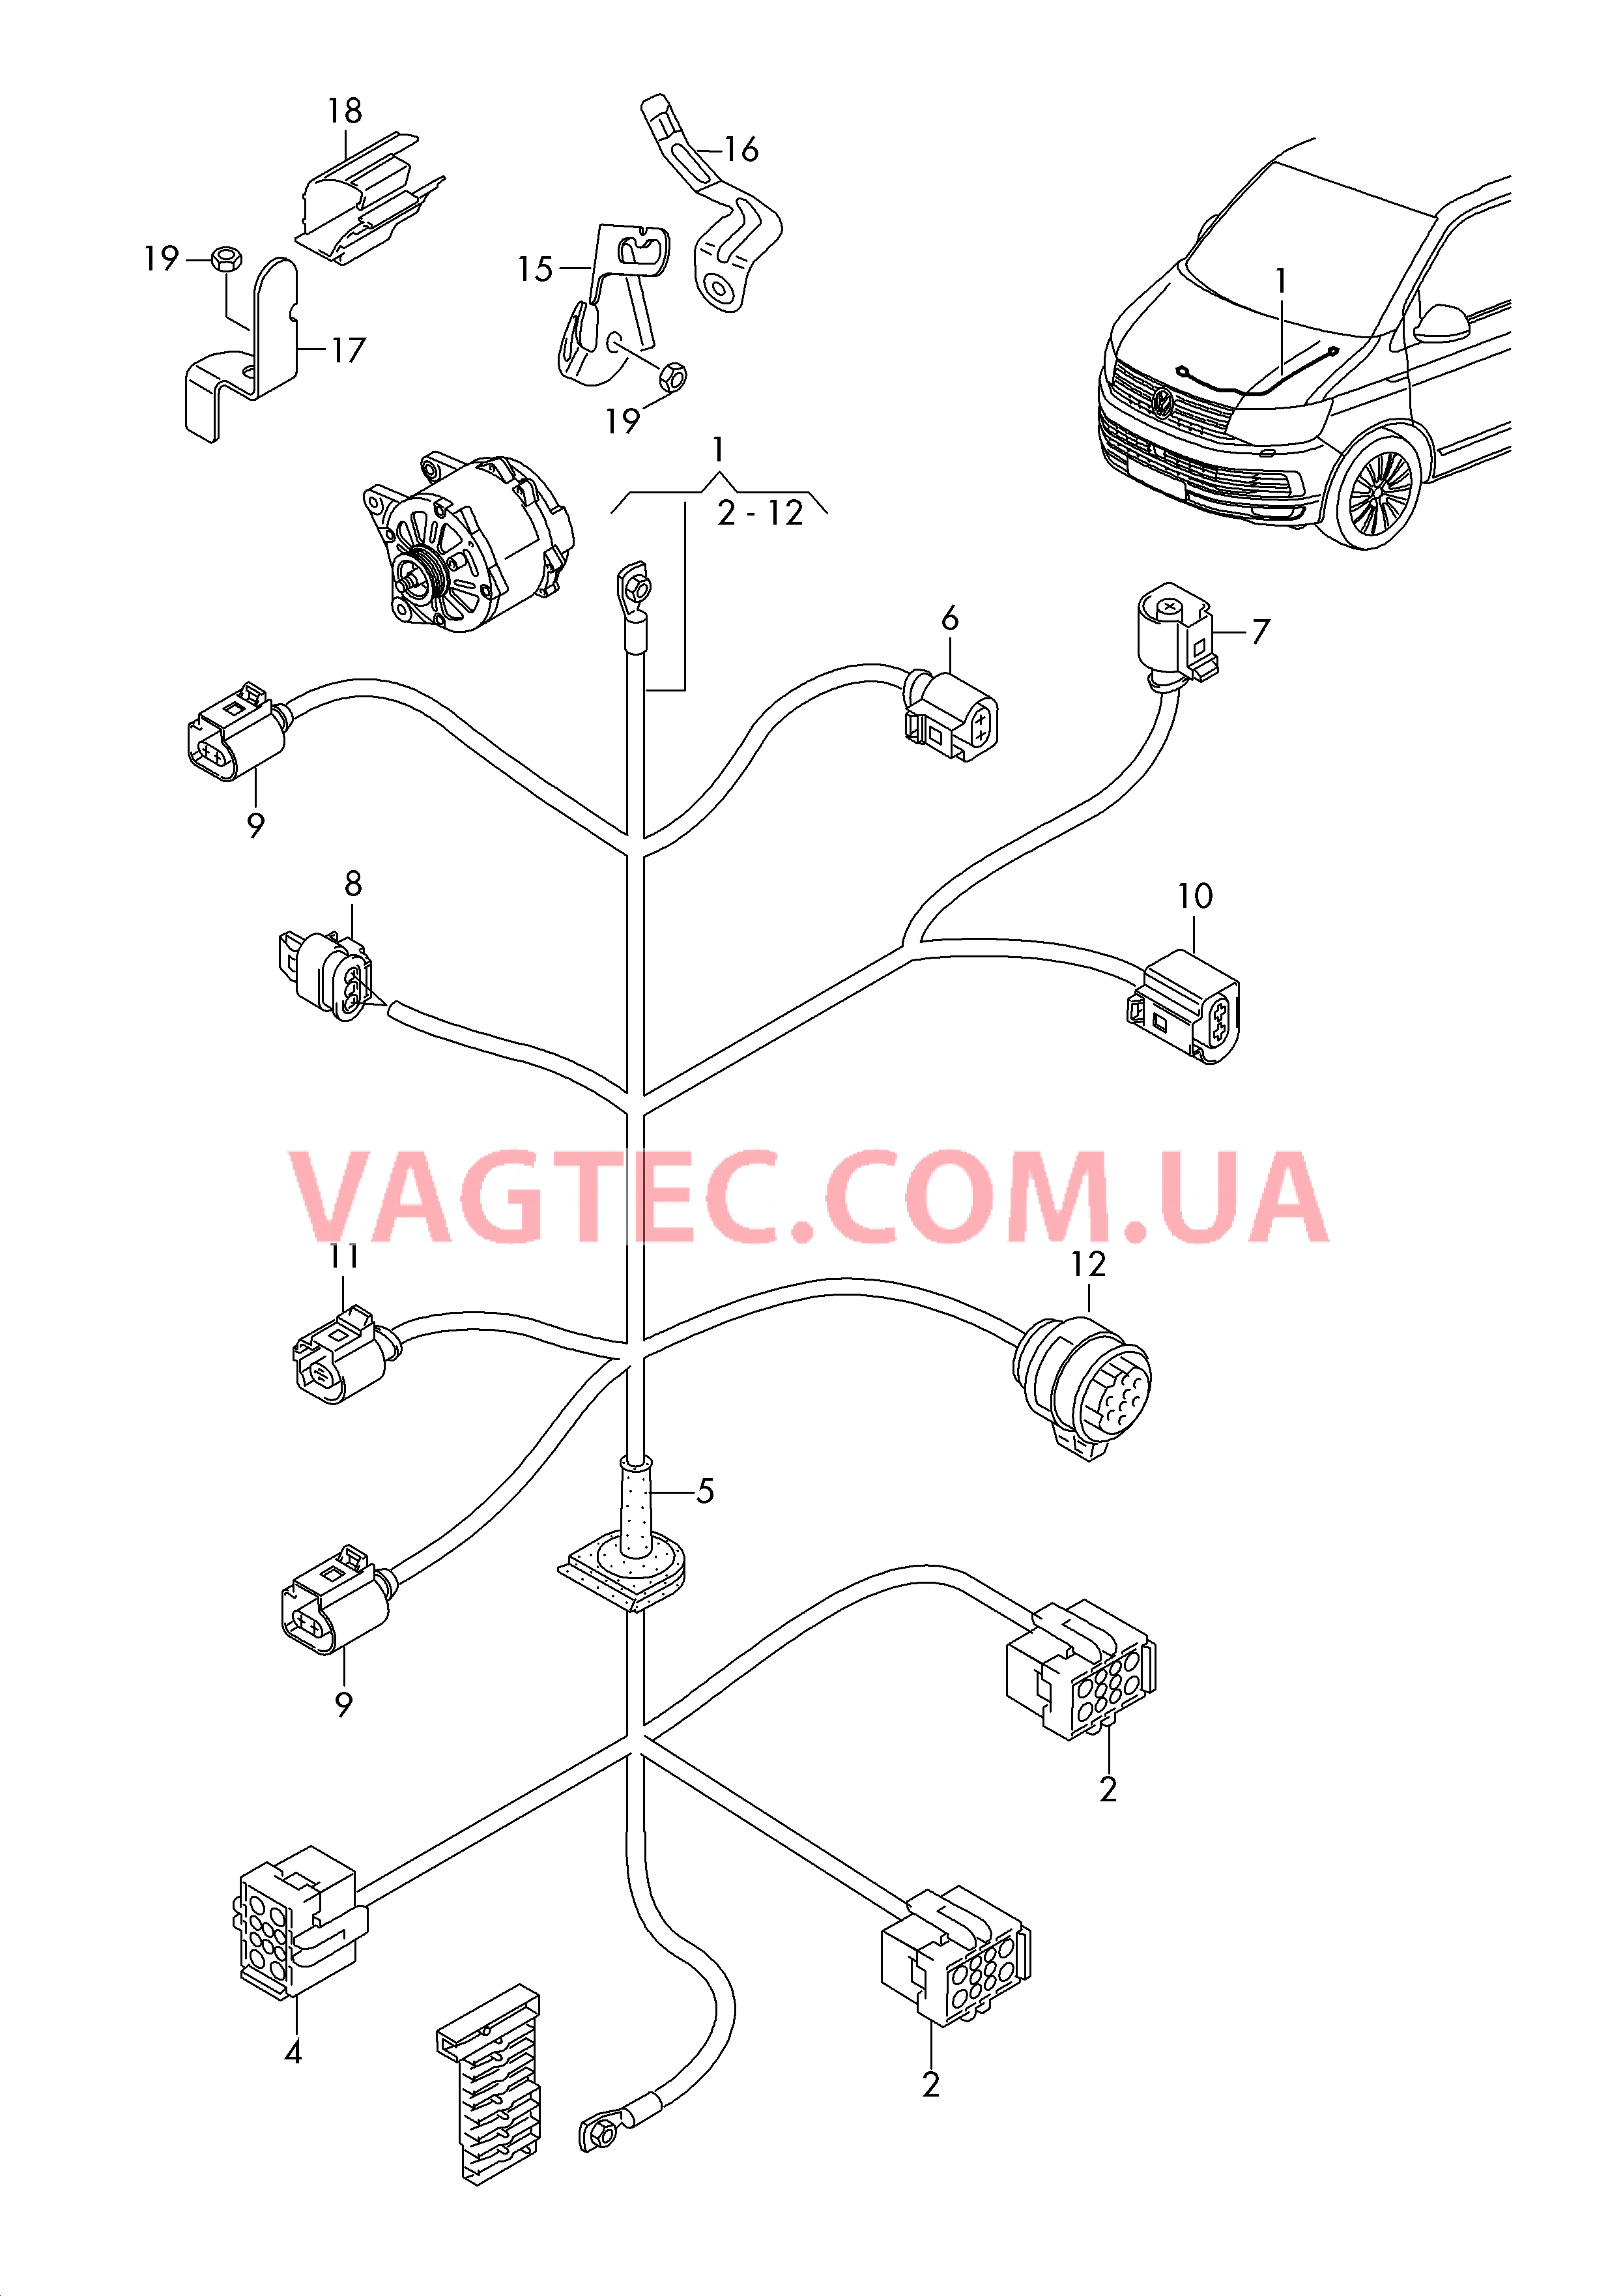 Жгут проводов для двигателя Генератор  для VOLKSWAGEN Transporter 2018-1